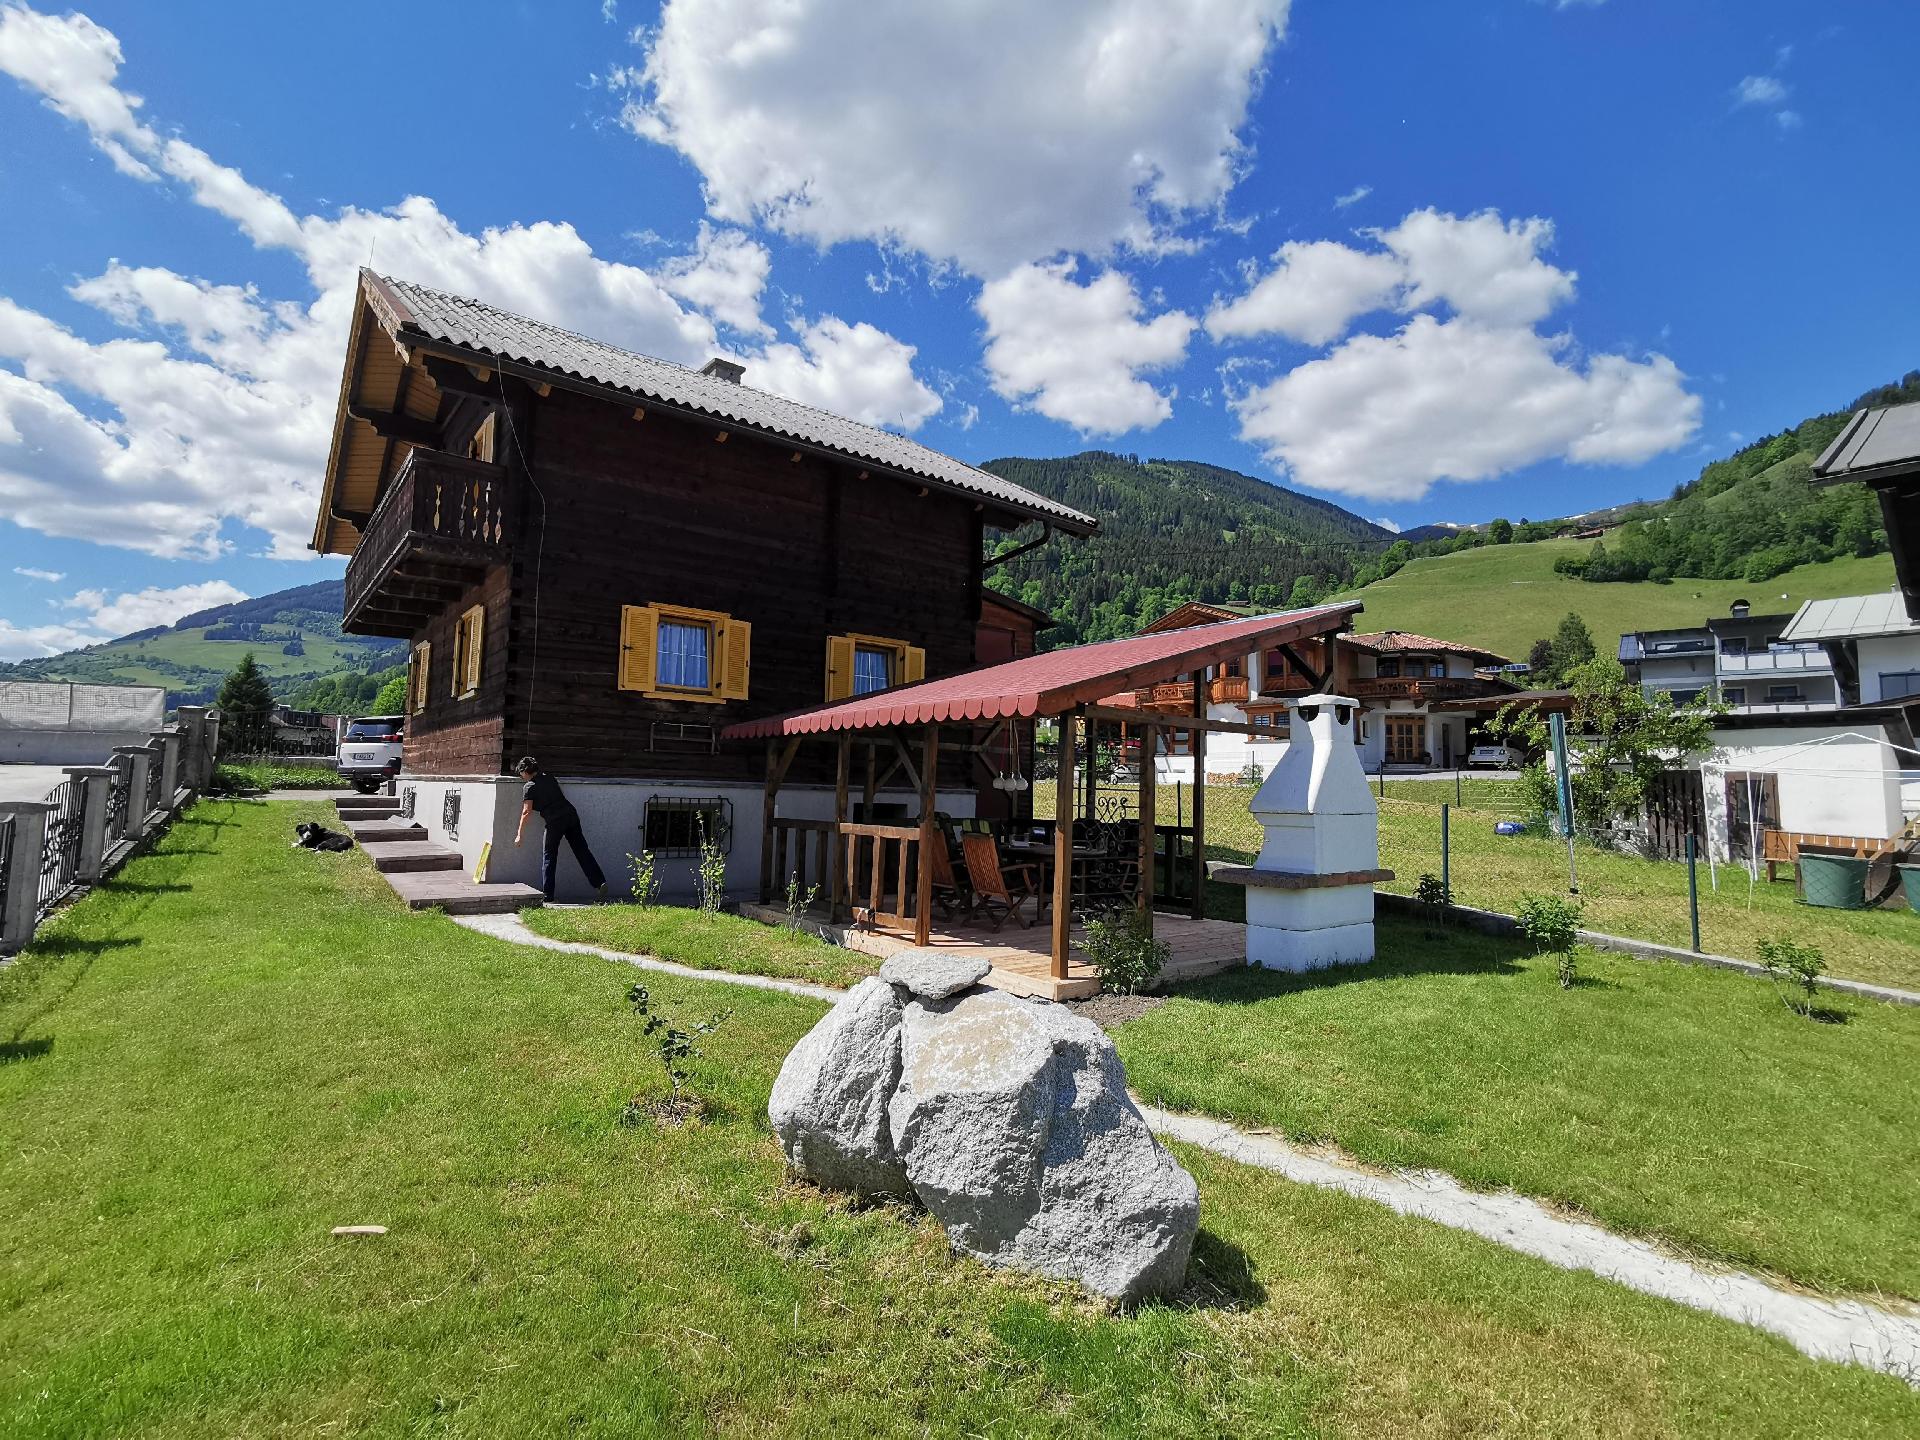 Ferienhaus in Uttendorf mit Grill, Garten und Terr   Nationalpark Hohe Tauern